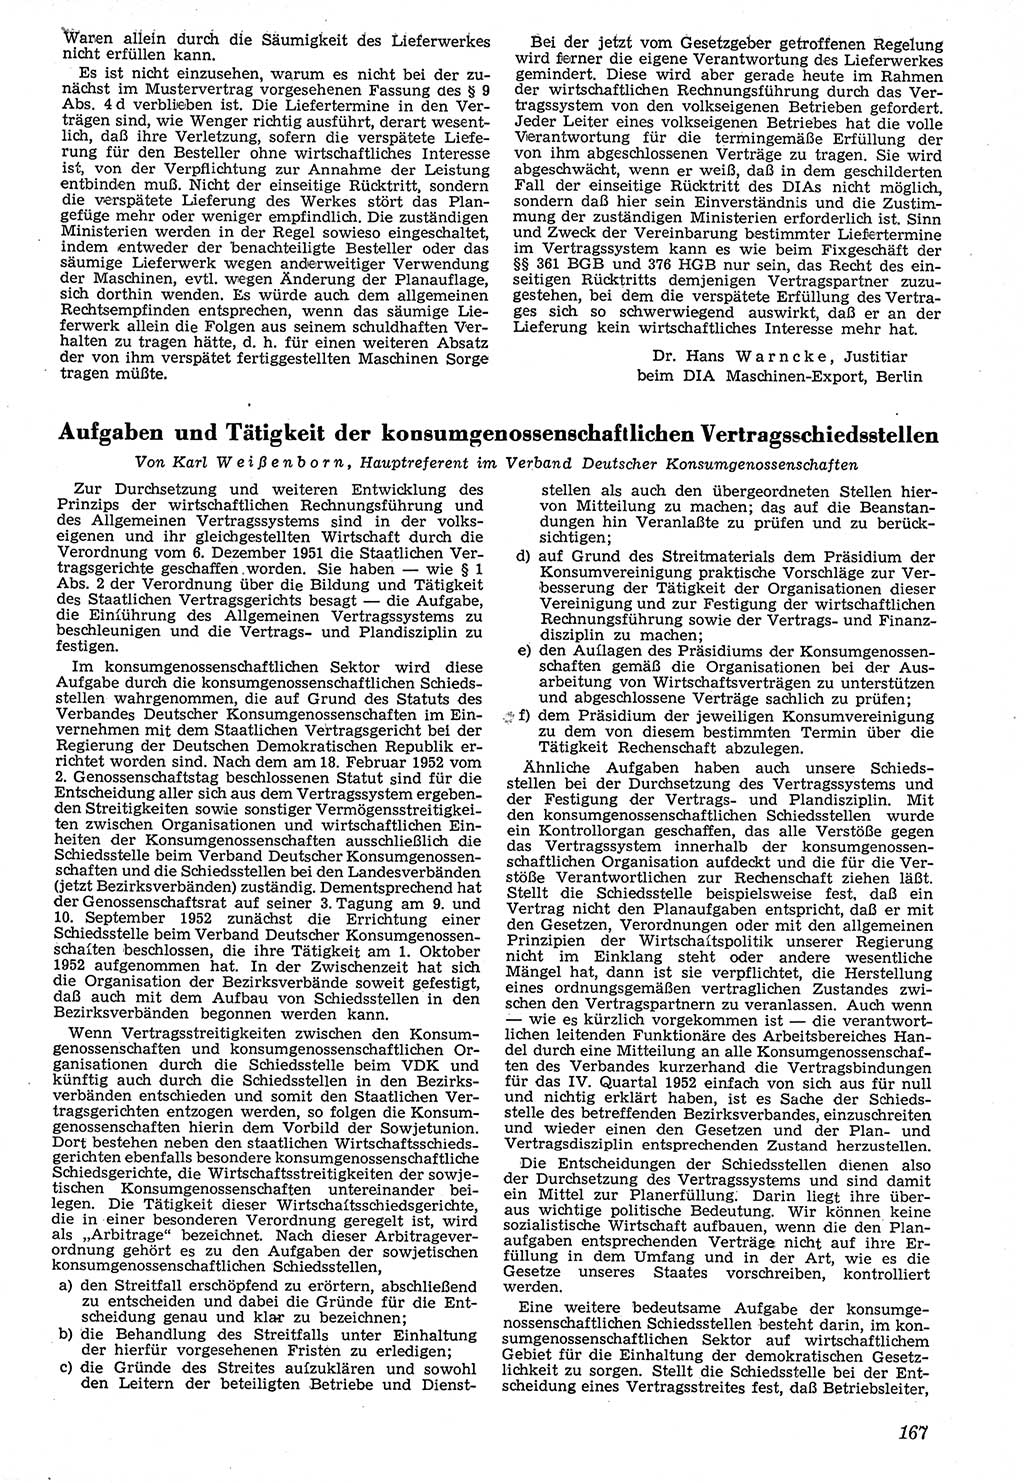 Neue Justiz (NJ), Zeitschrift für Recht und Rechtswissenschaft [Deutsche Demokratische Republik (DDR)], 7. Jahrgang 1953, Seite 167 (NJ DDR 1953, S. 167)